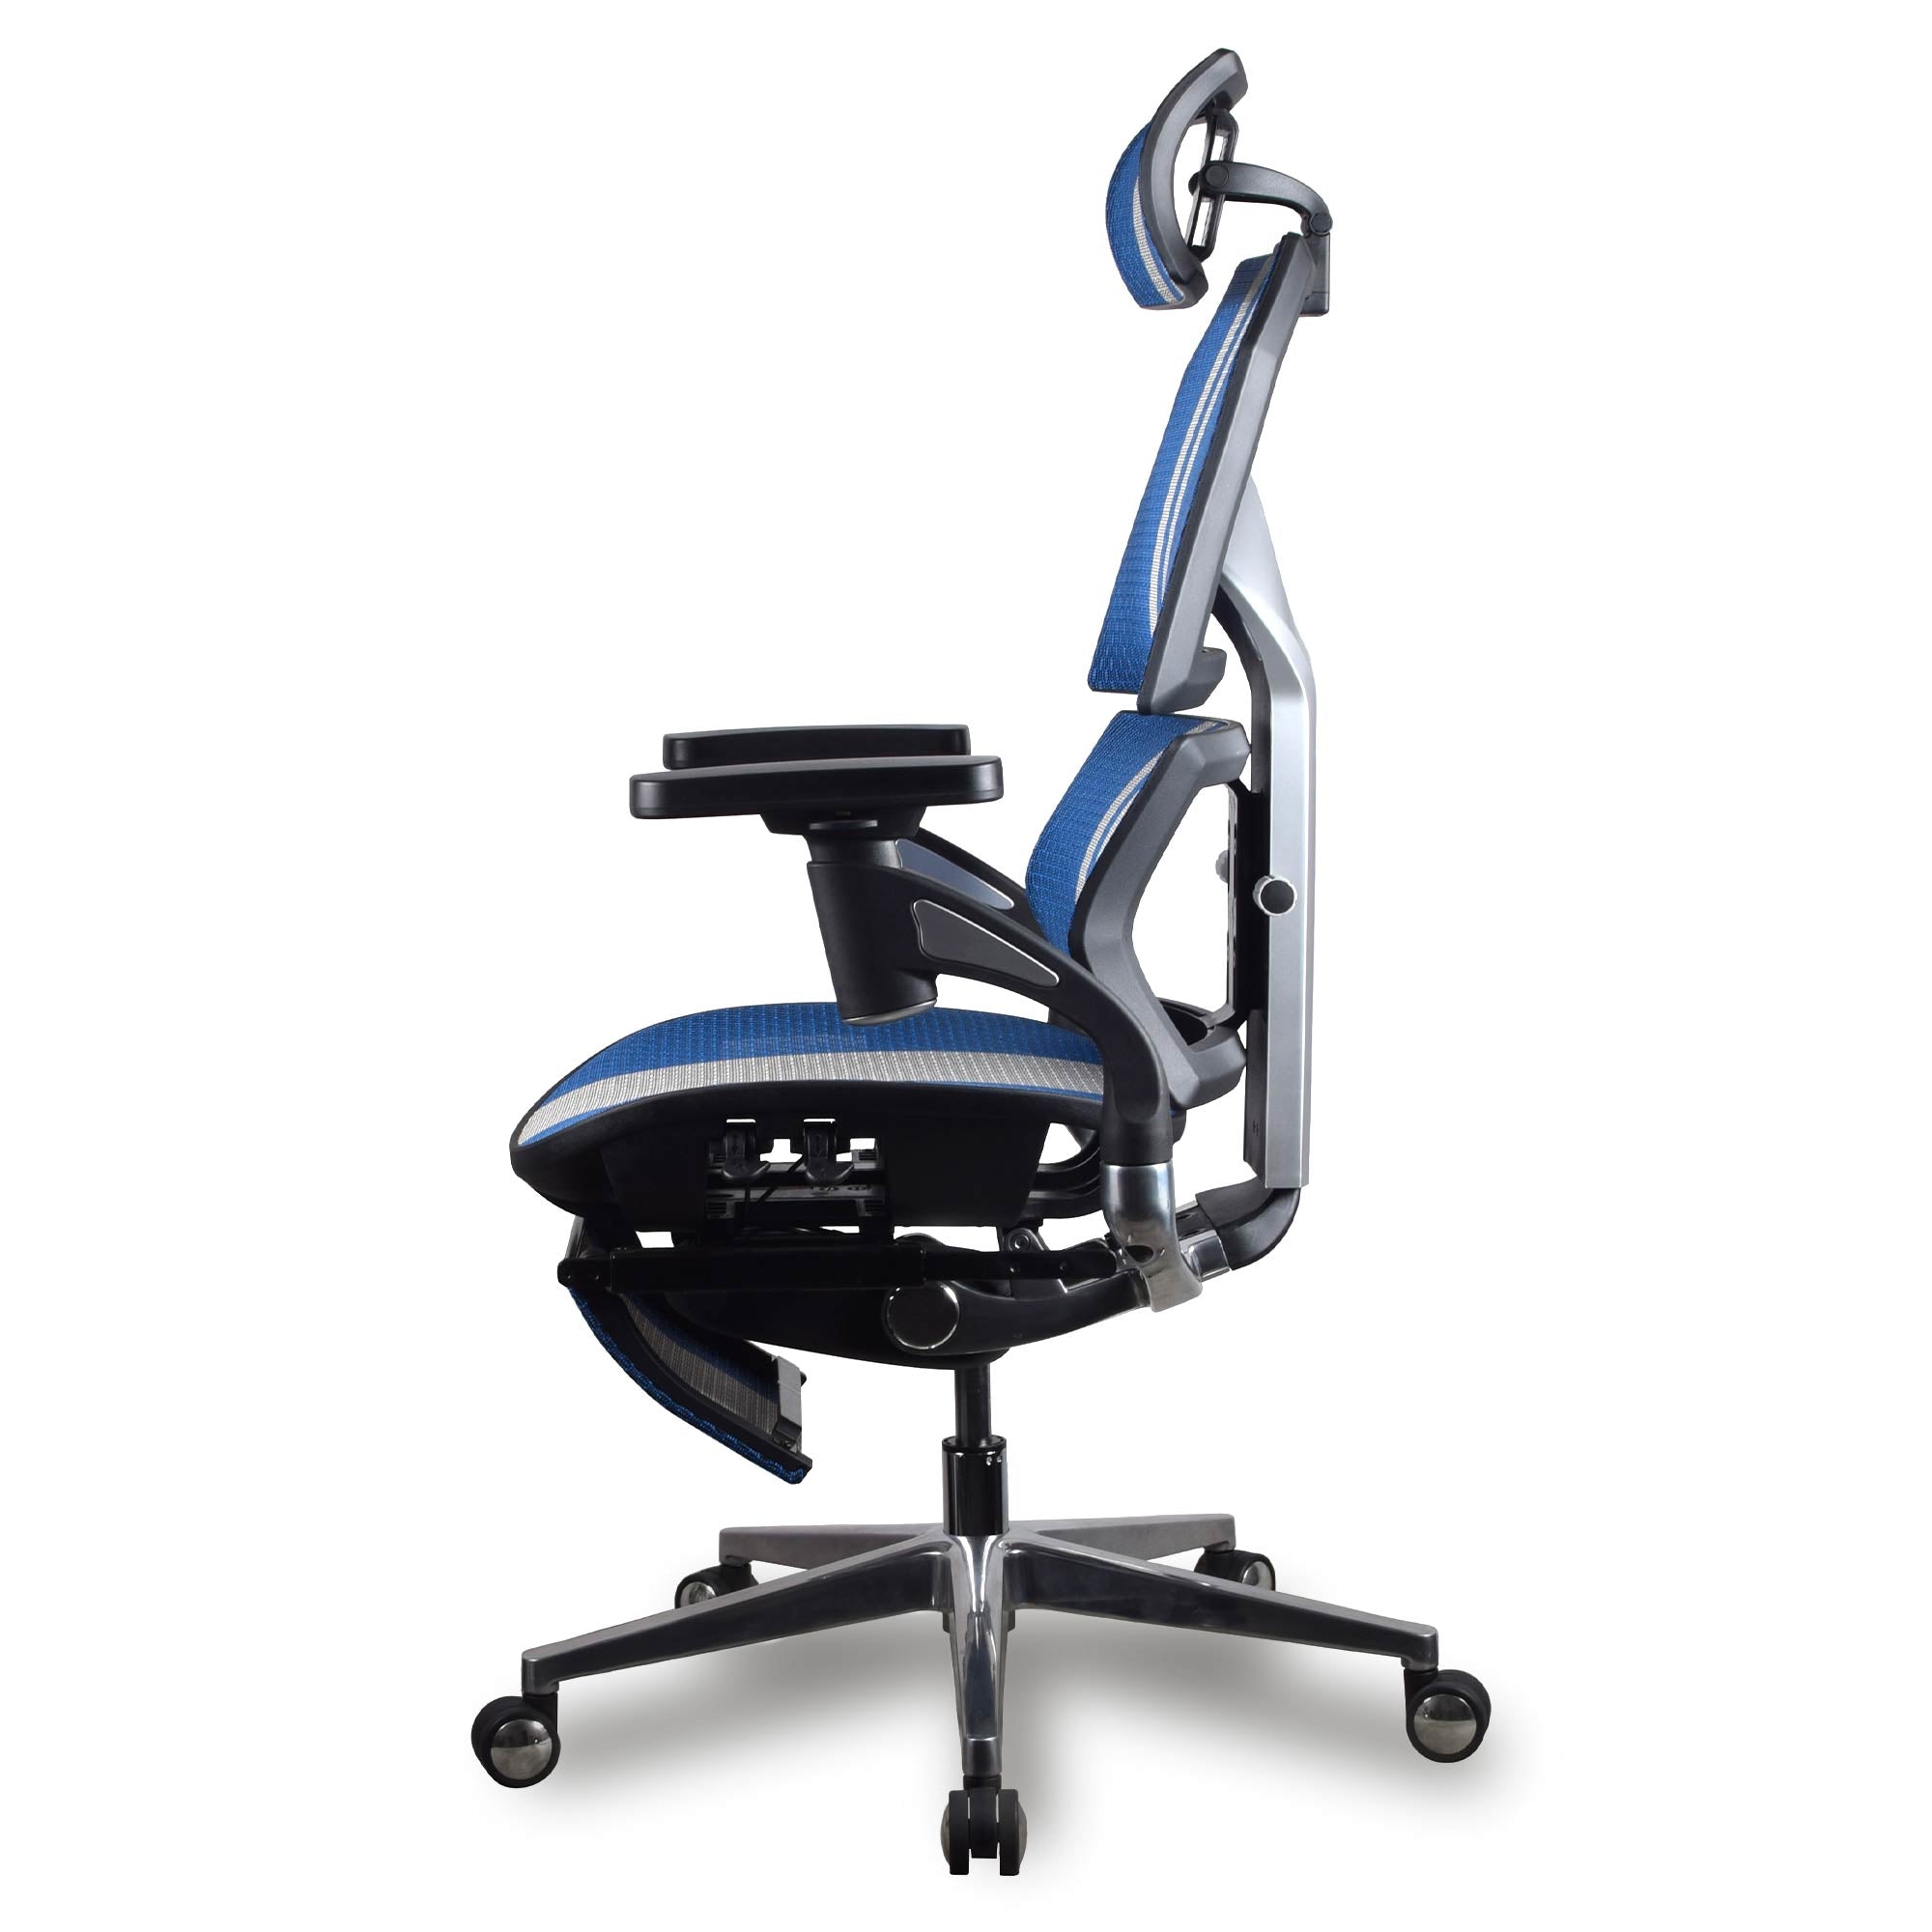 chaise ergonomique gamer kqueo AURA PREMIUM coloris bleu et blanc